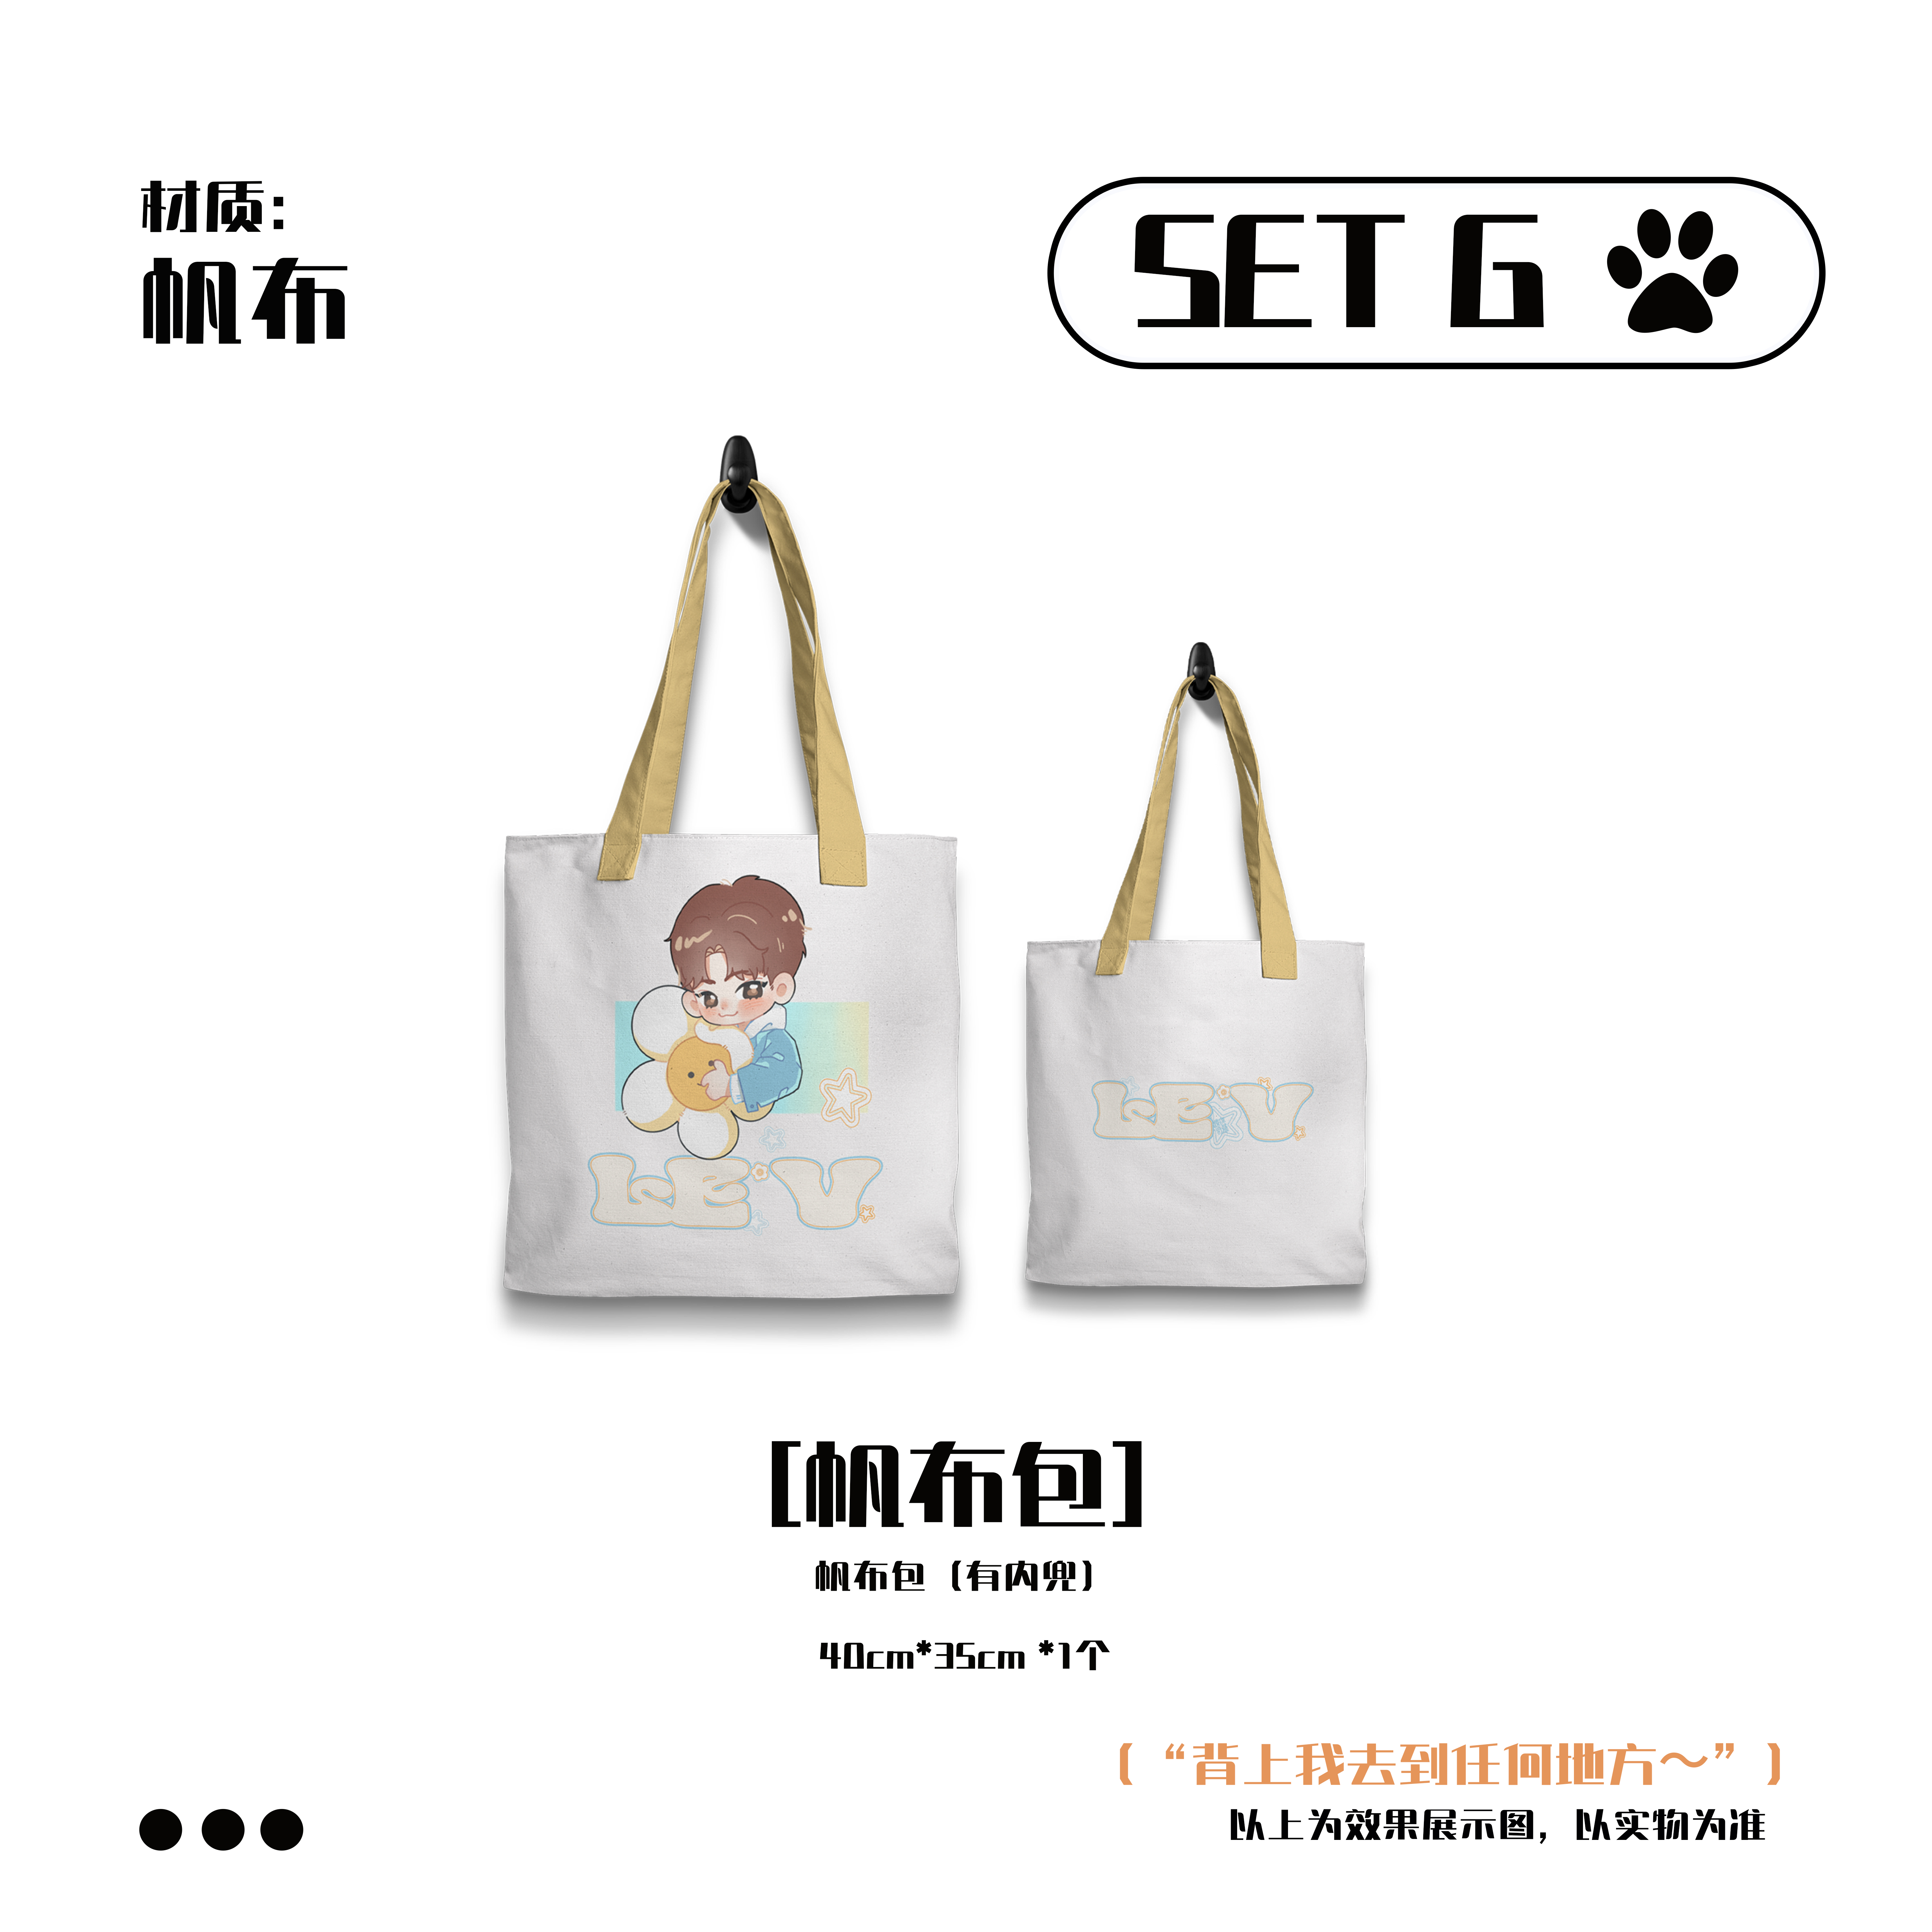 [全款 帆布包 特典专] [Ktown4u Special Gift] LE'V - 1st EP Album [A.I.BAE] (POCAALBUM)_染色体家族站联合